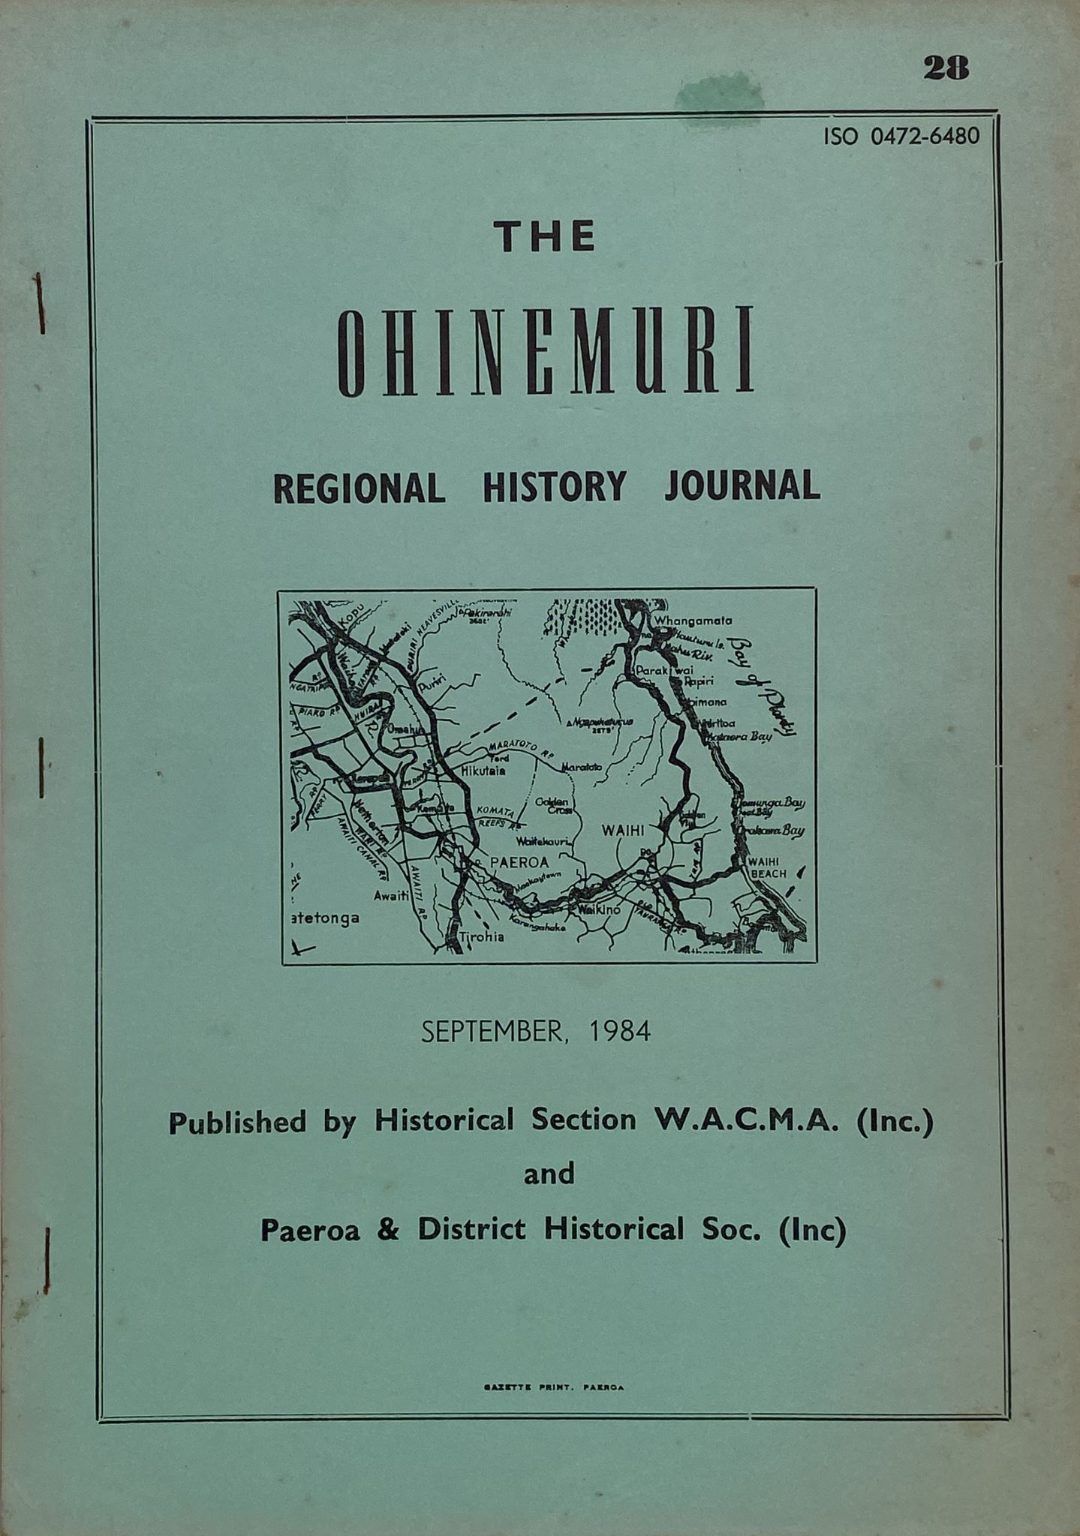 THE OHINEMURI REGIONAL HISTORY JOURNAL: September 1984